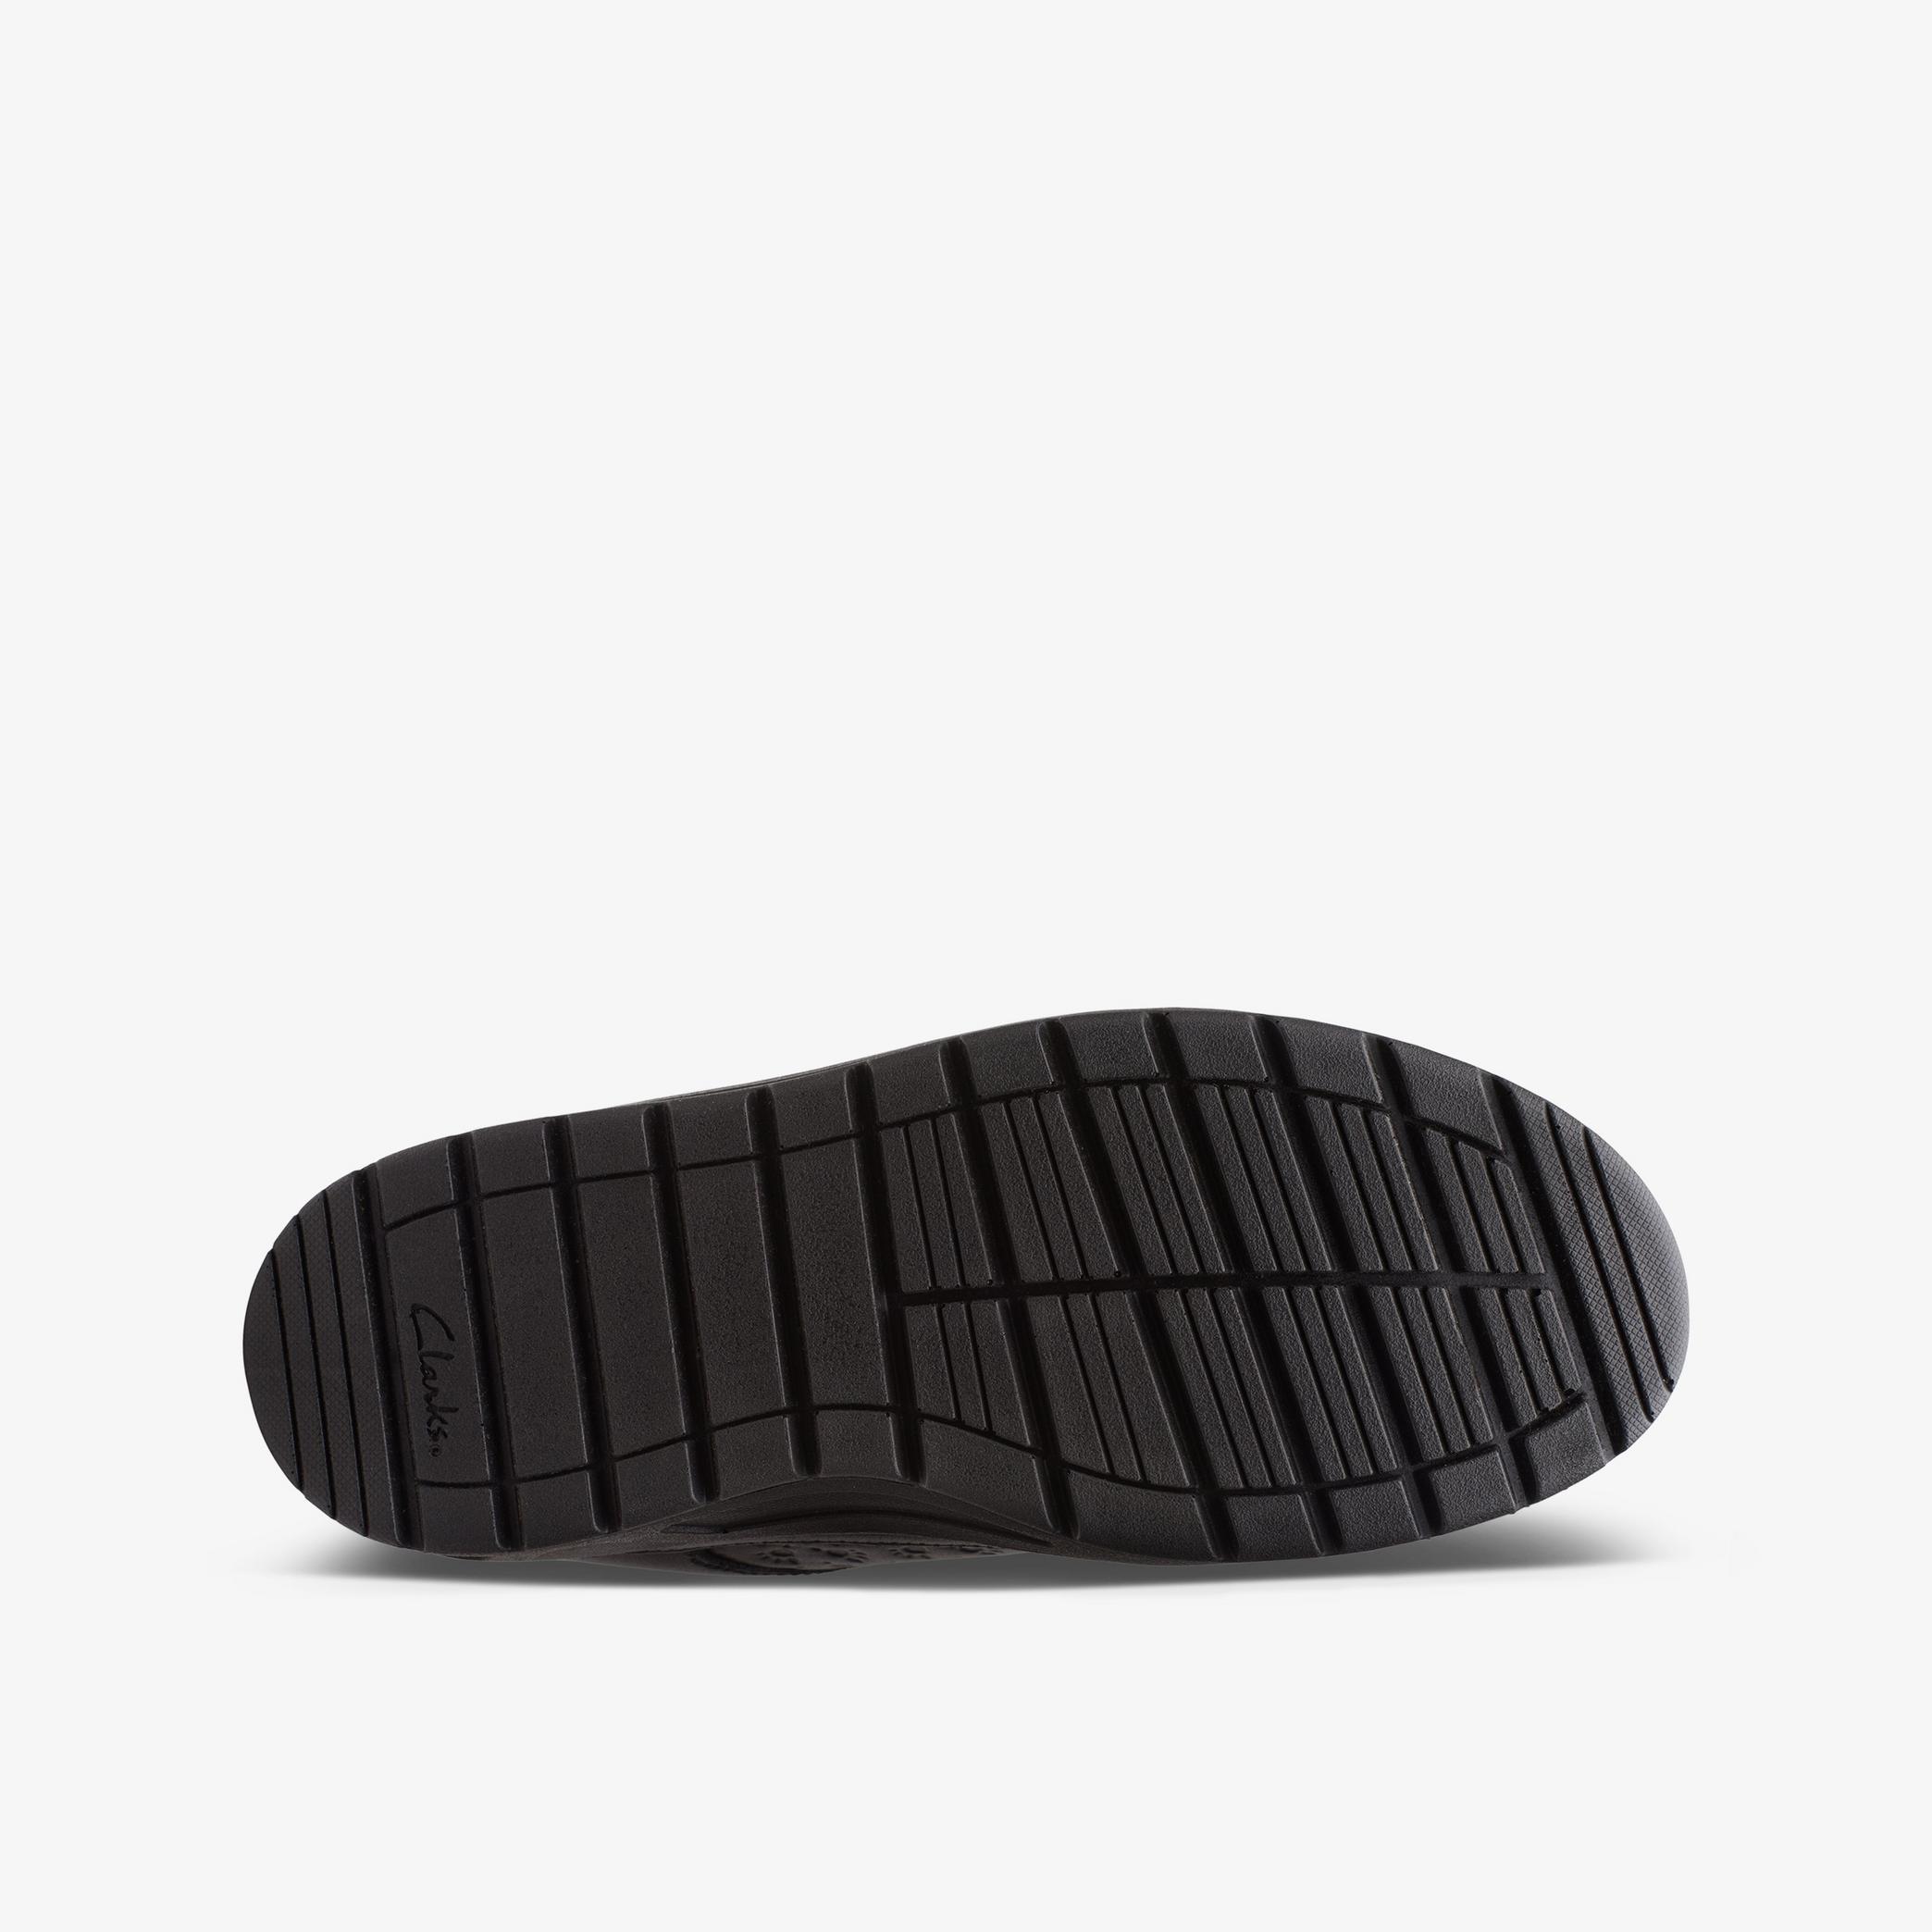 Boys Palmer Steggy Older Black Leather Shoes | Clarks UK